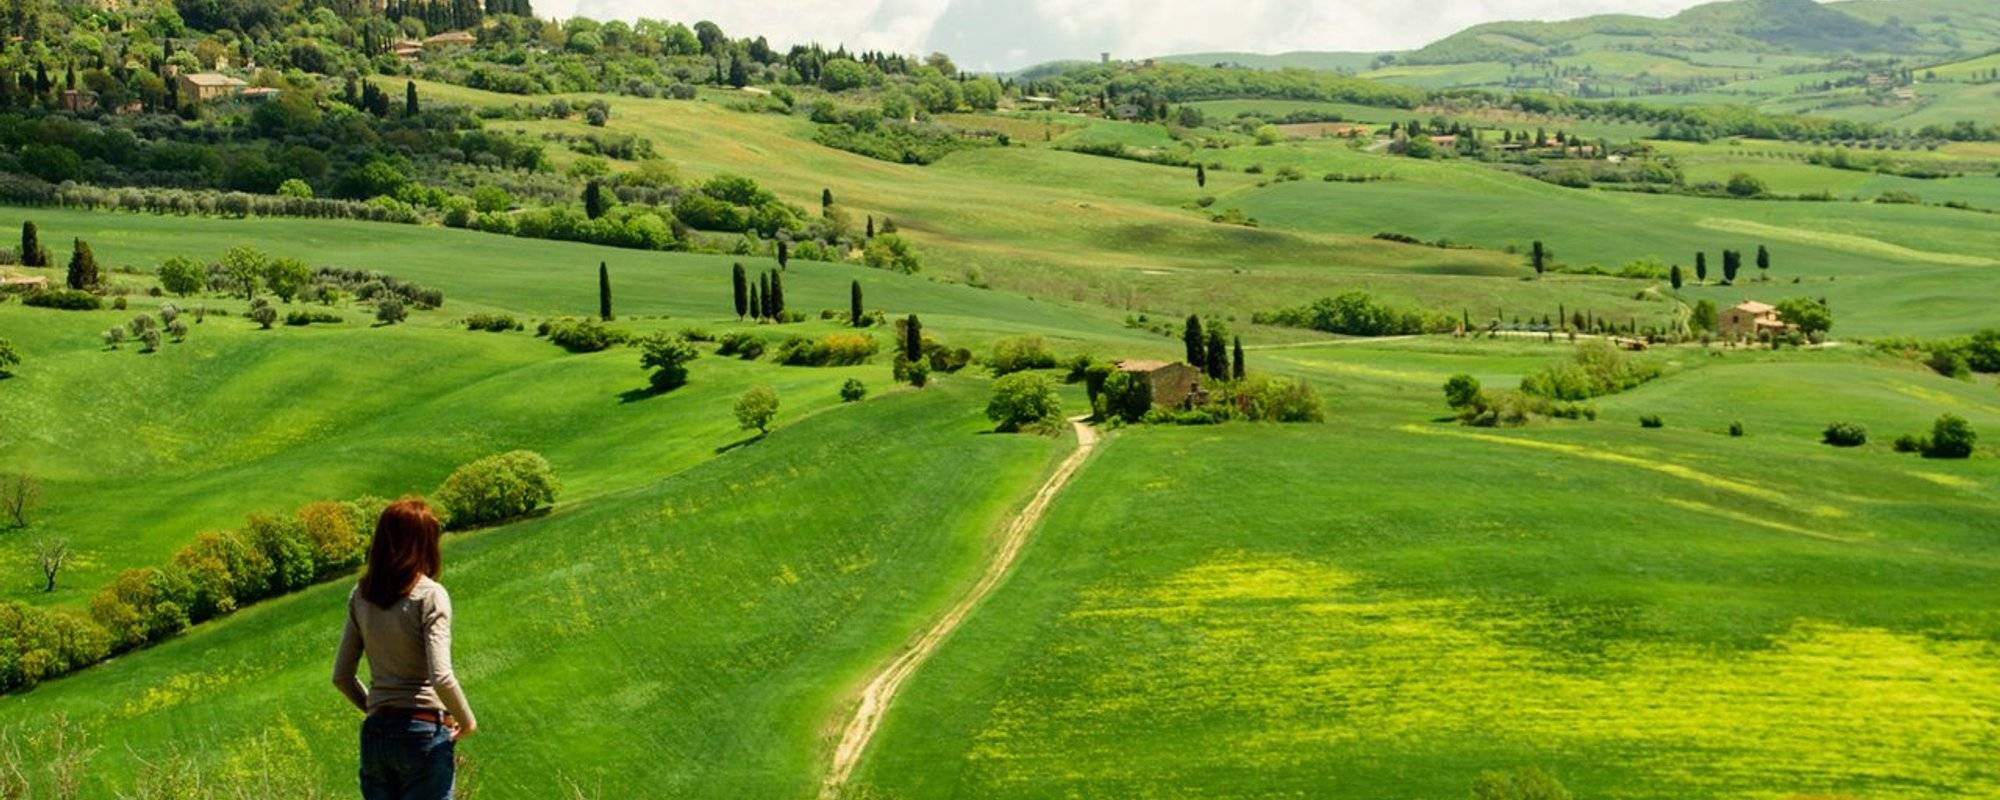 Share My World: Tuscany